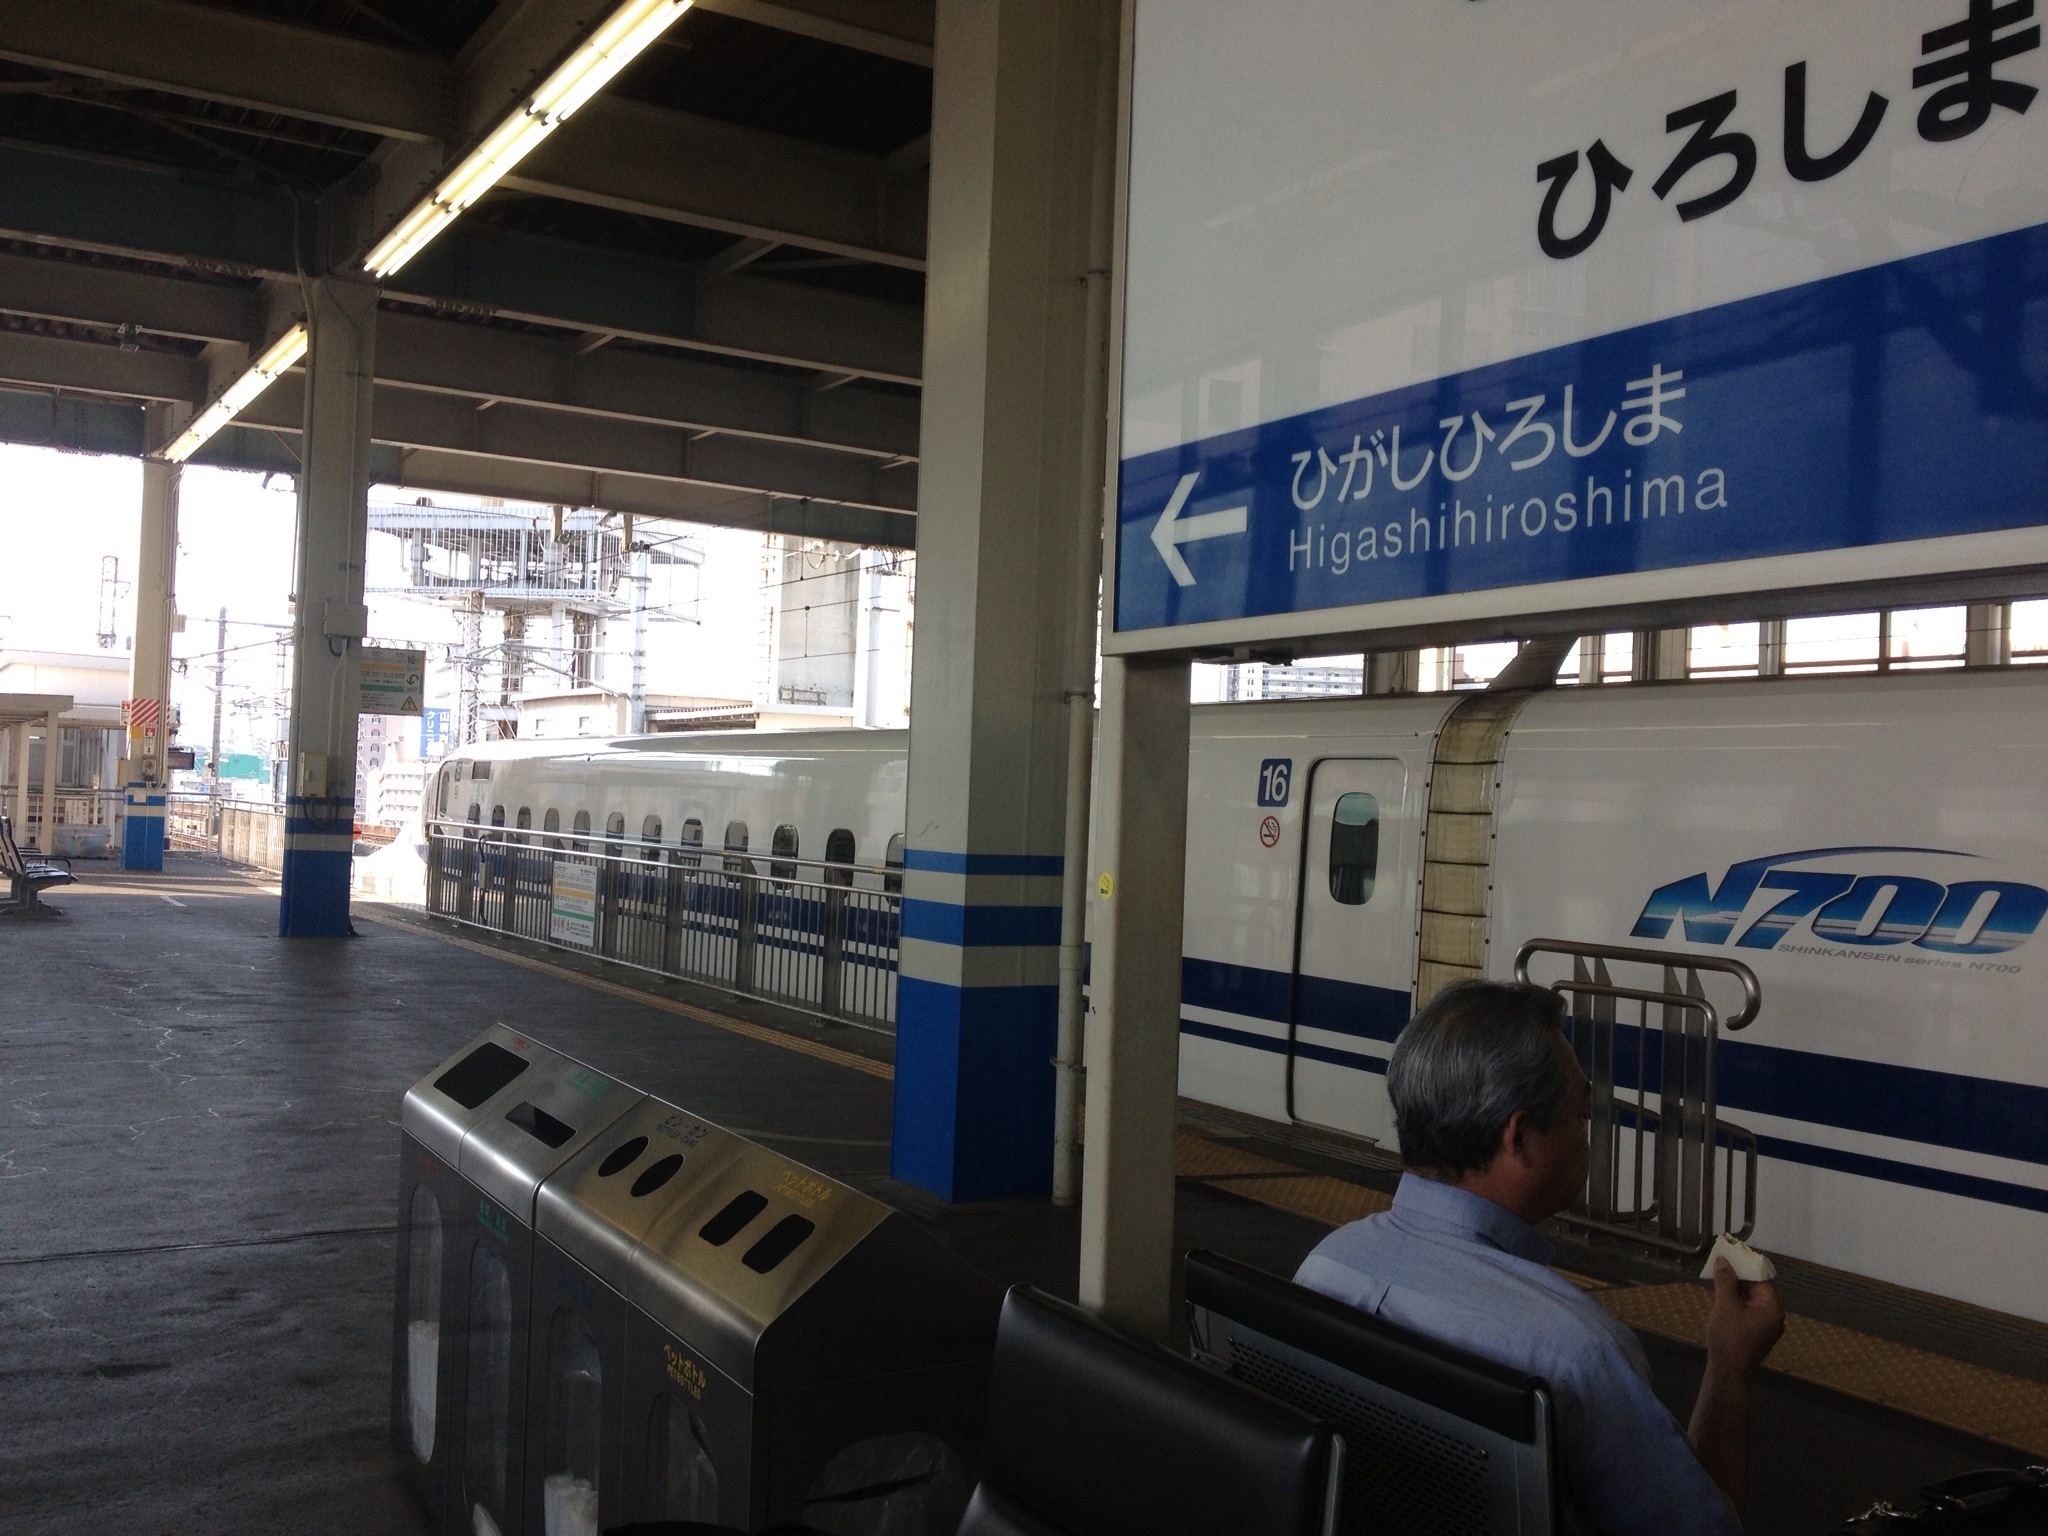 Tokyo Bound Train